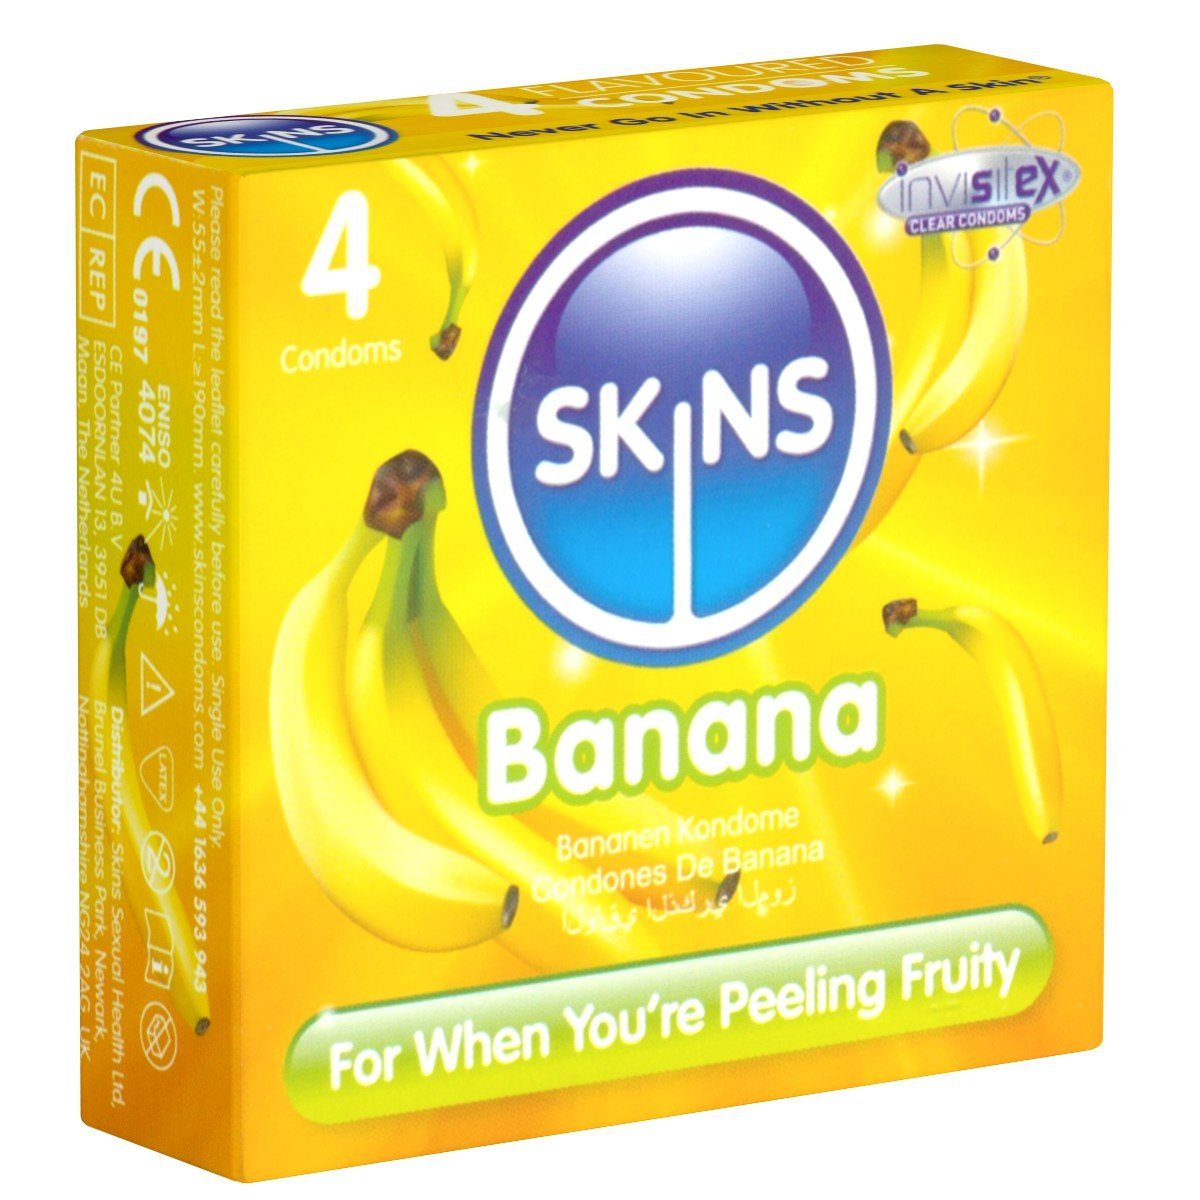 SKINS Condoms Kondome Banana, samtweiche Oberfläche, fühlt sich an wie "echt", Packung mit, 4 St., Kondome mit feinem Bananenaroma, durchsichtiges Latex (kristallklar), kein Latexgeruch